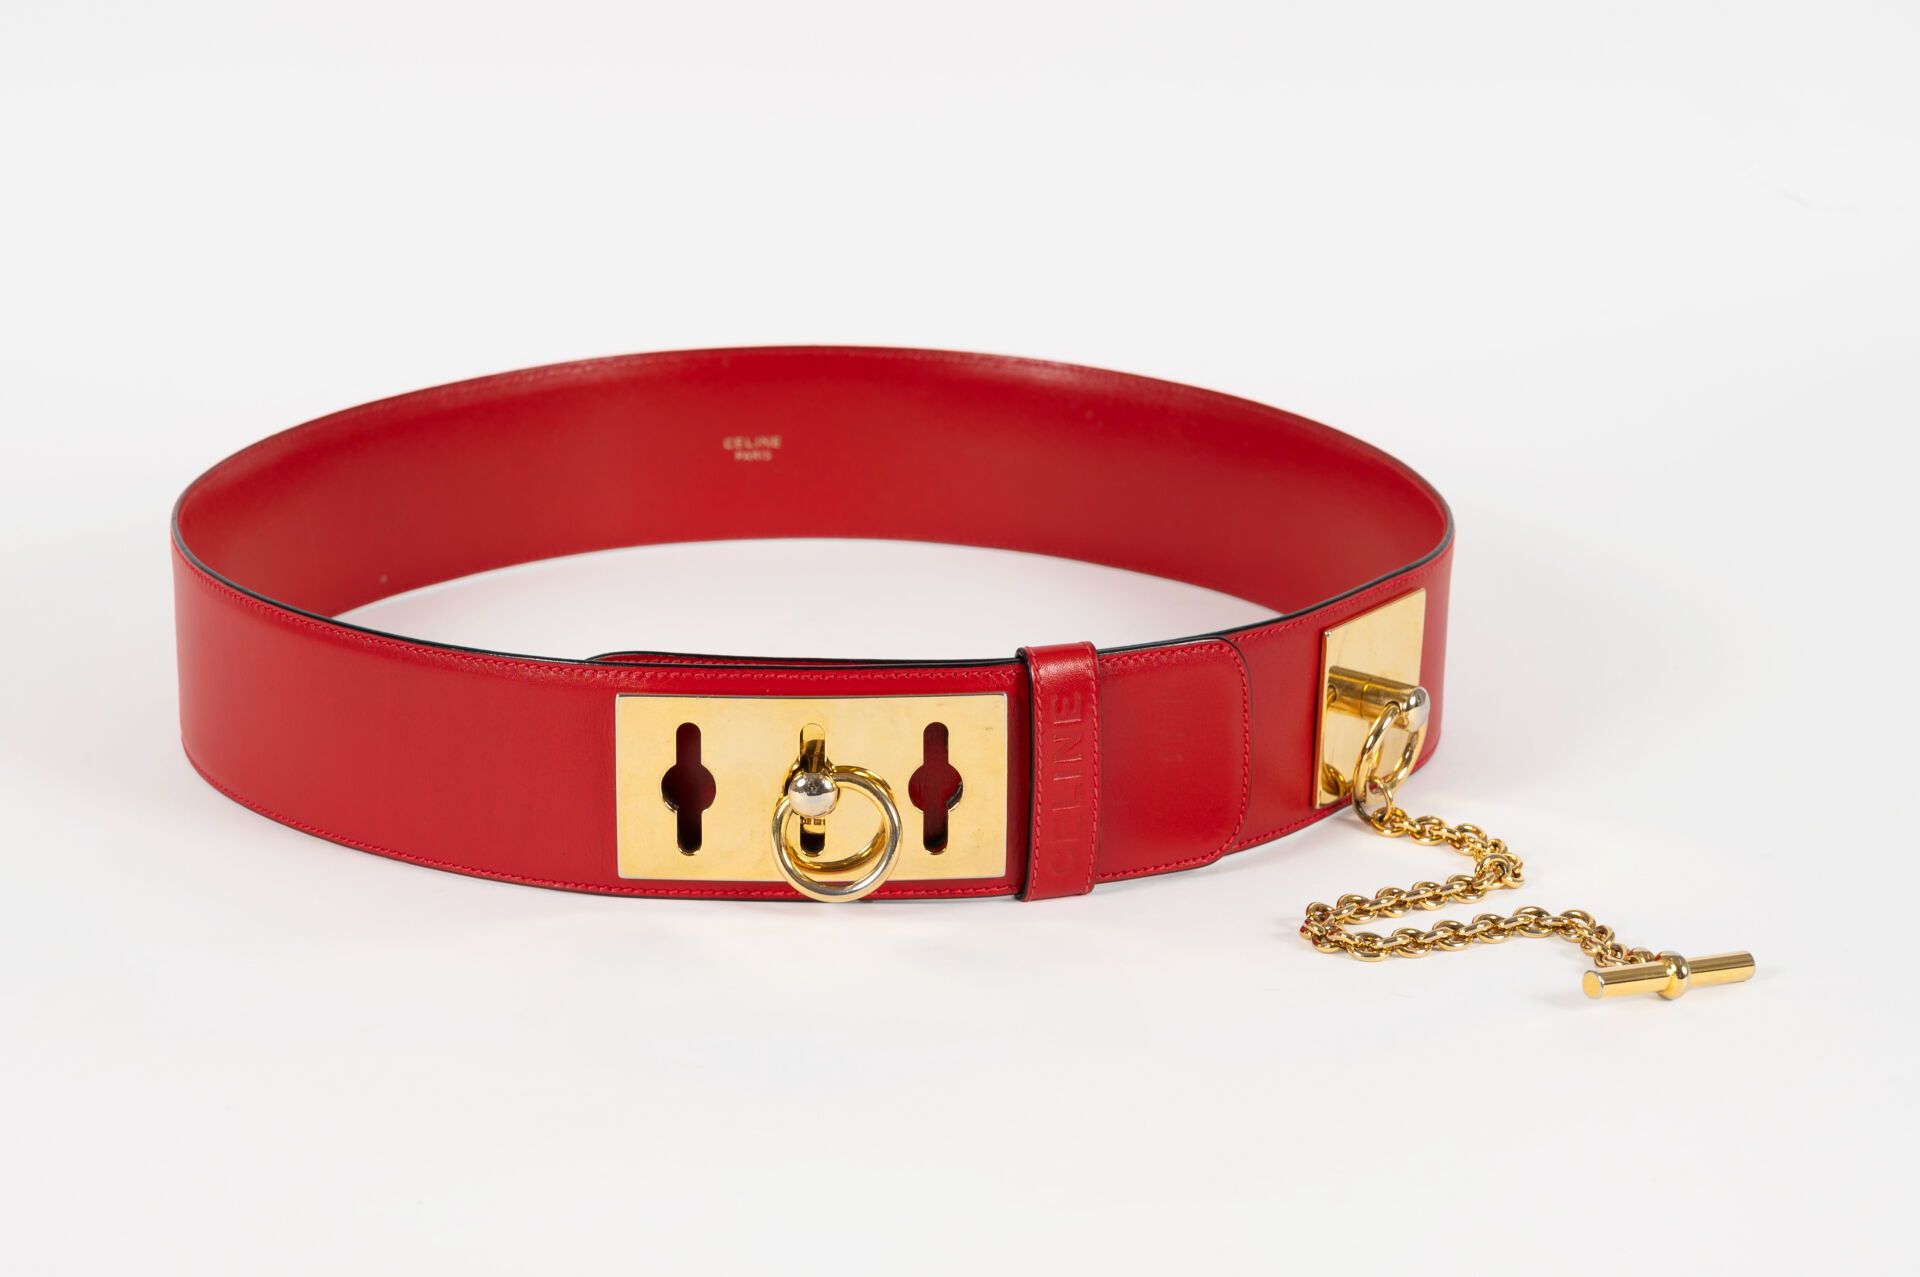 CELINE Cintura in pelle rossa con chiusura in metallo dorato
Lunghezza: 100 cm -&hellip;